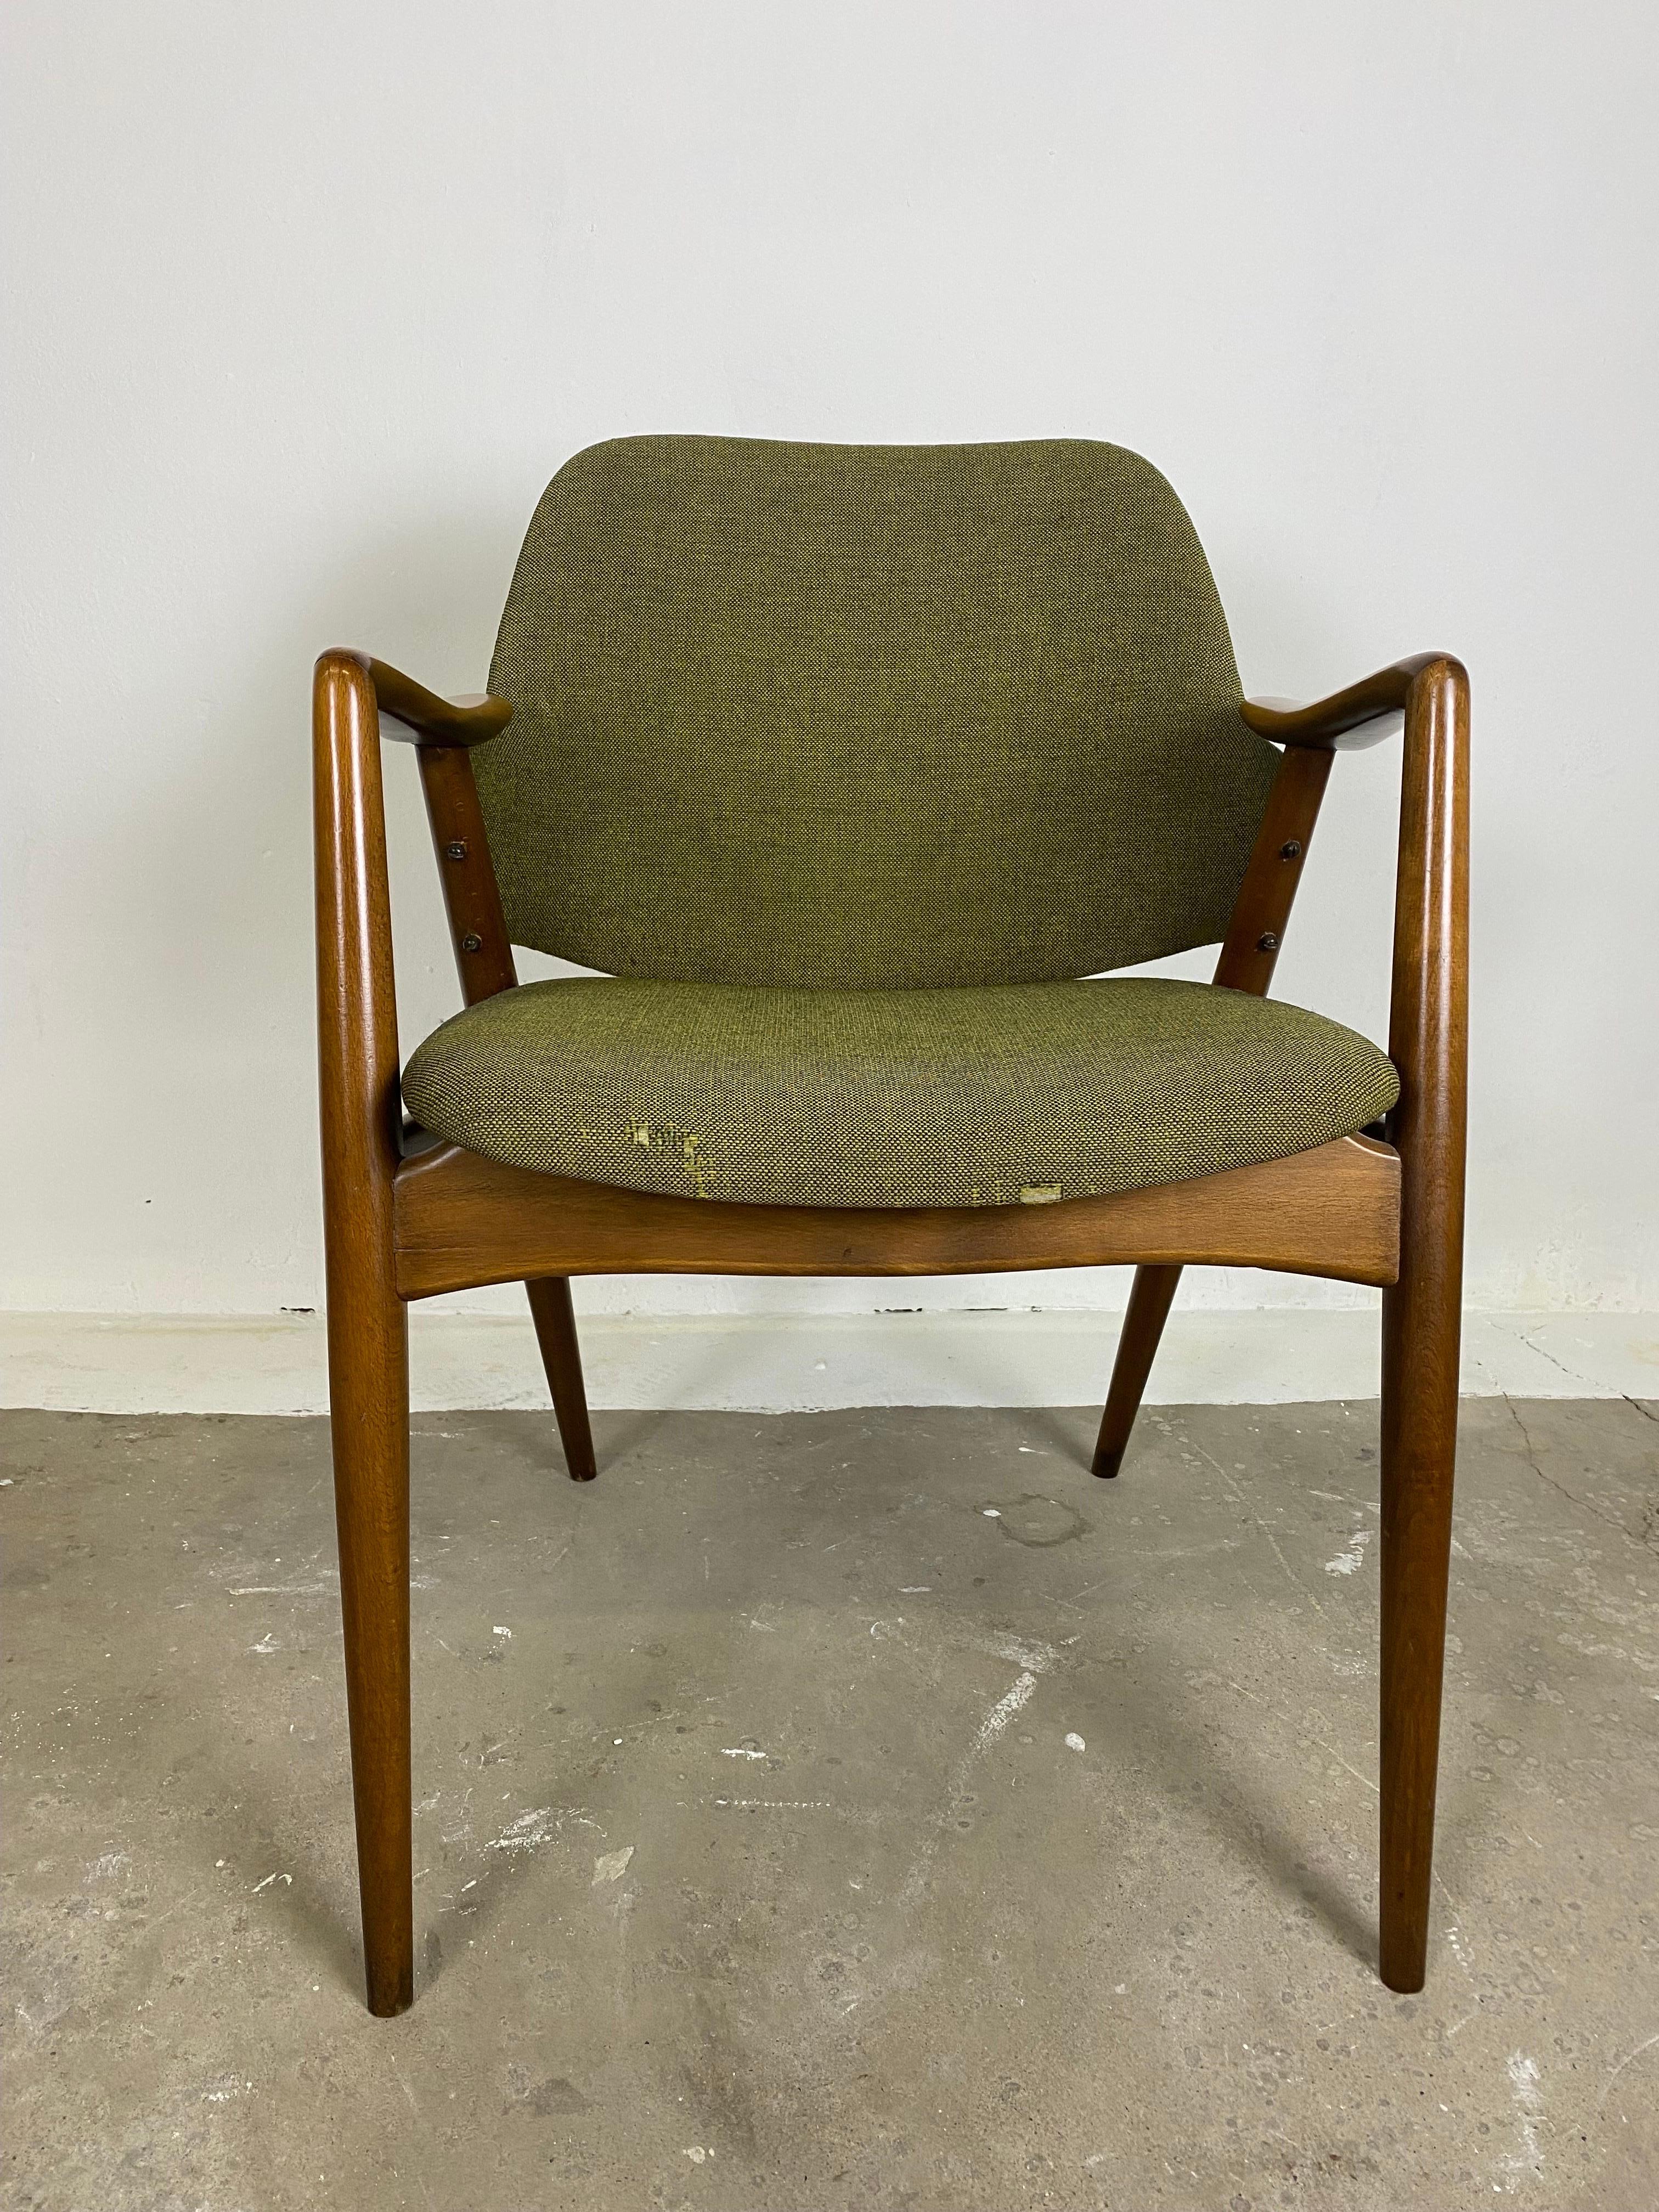 Vielleicht für die Neupolsterung: Eine Reihe von  zwei Kontur-Stühle  von Alf Svensson für Dux of Sweden ,1950er Jahre.
Sehr stabil, komfortabel und ergonomisch.

Diese Stühle sind in Design und Qualität perfekt auf das berühmte Kontur Sofa von Alf